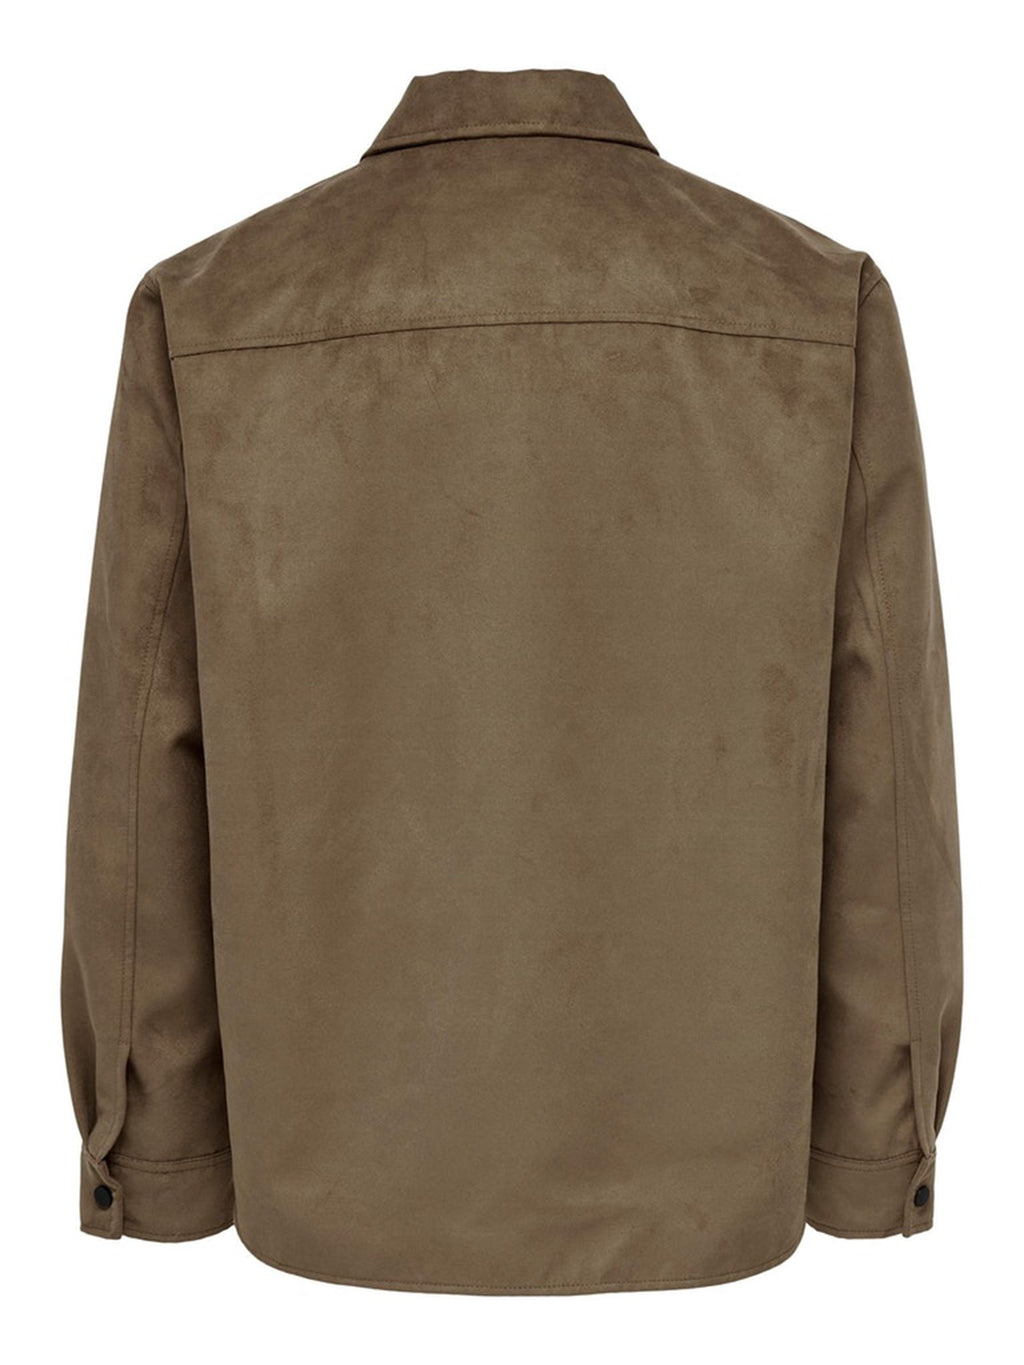 Penn Shirt Jacket - Cognac